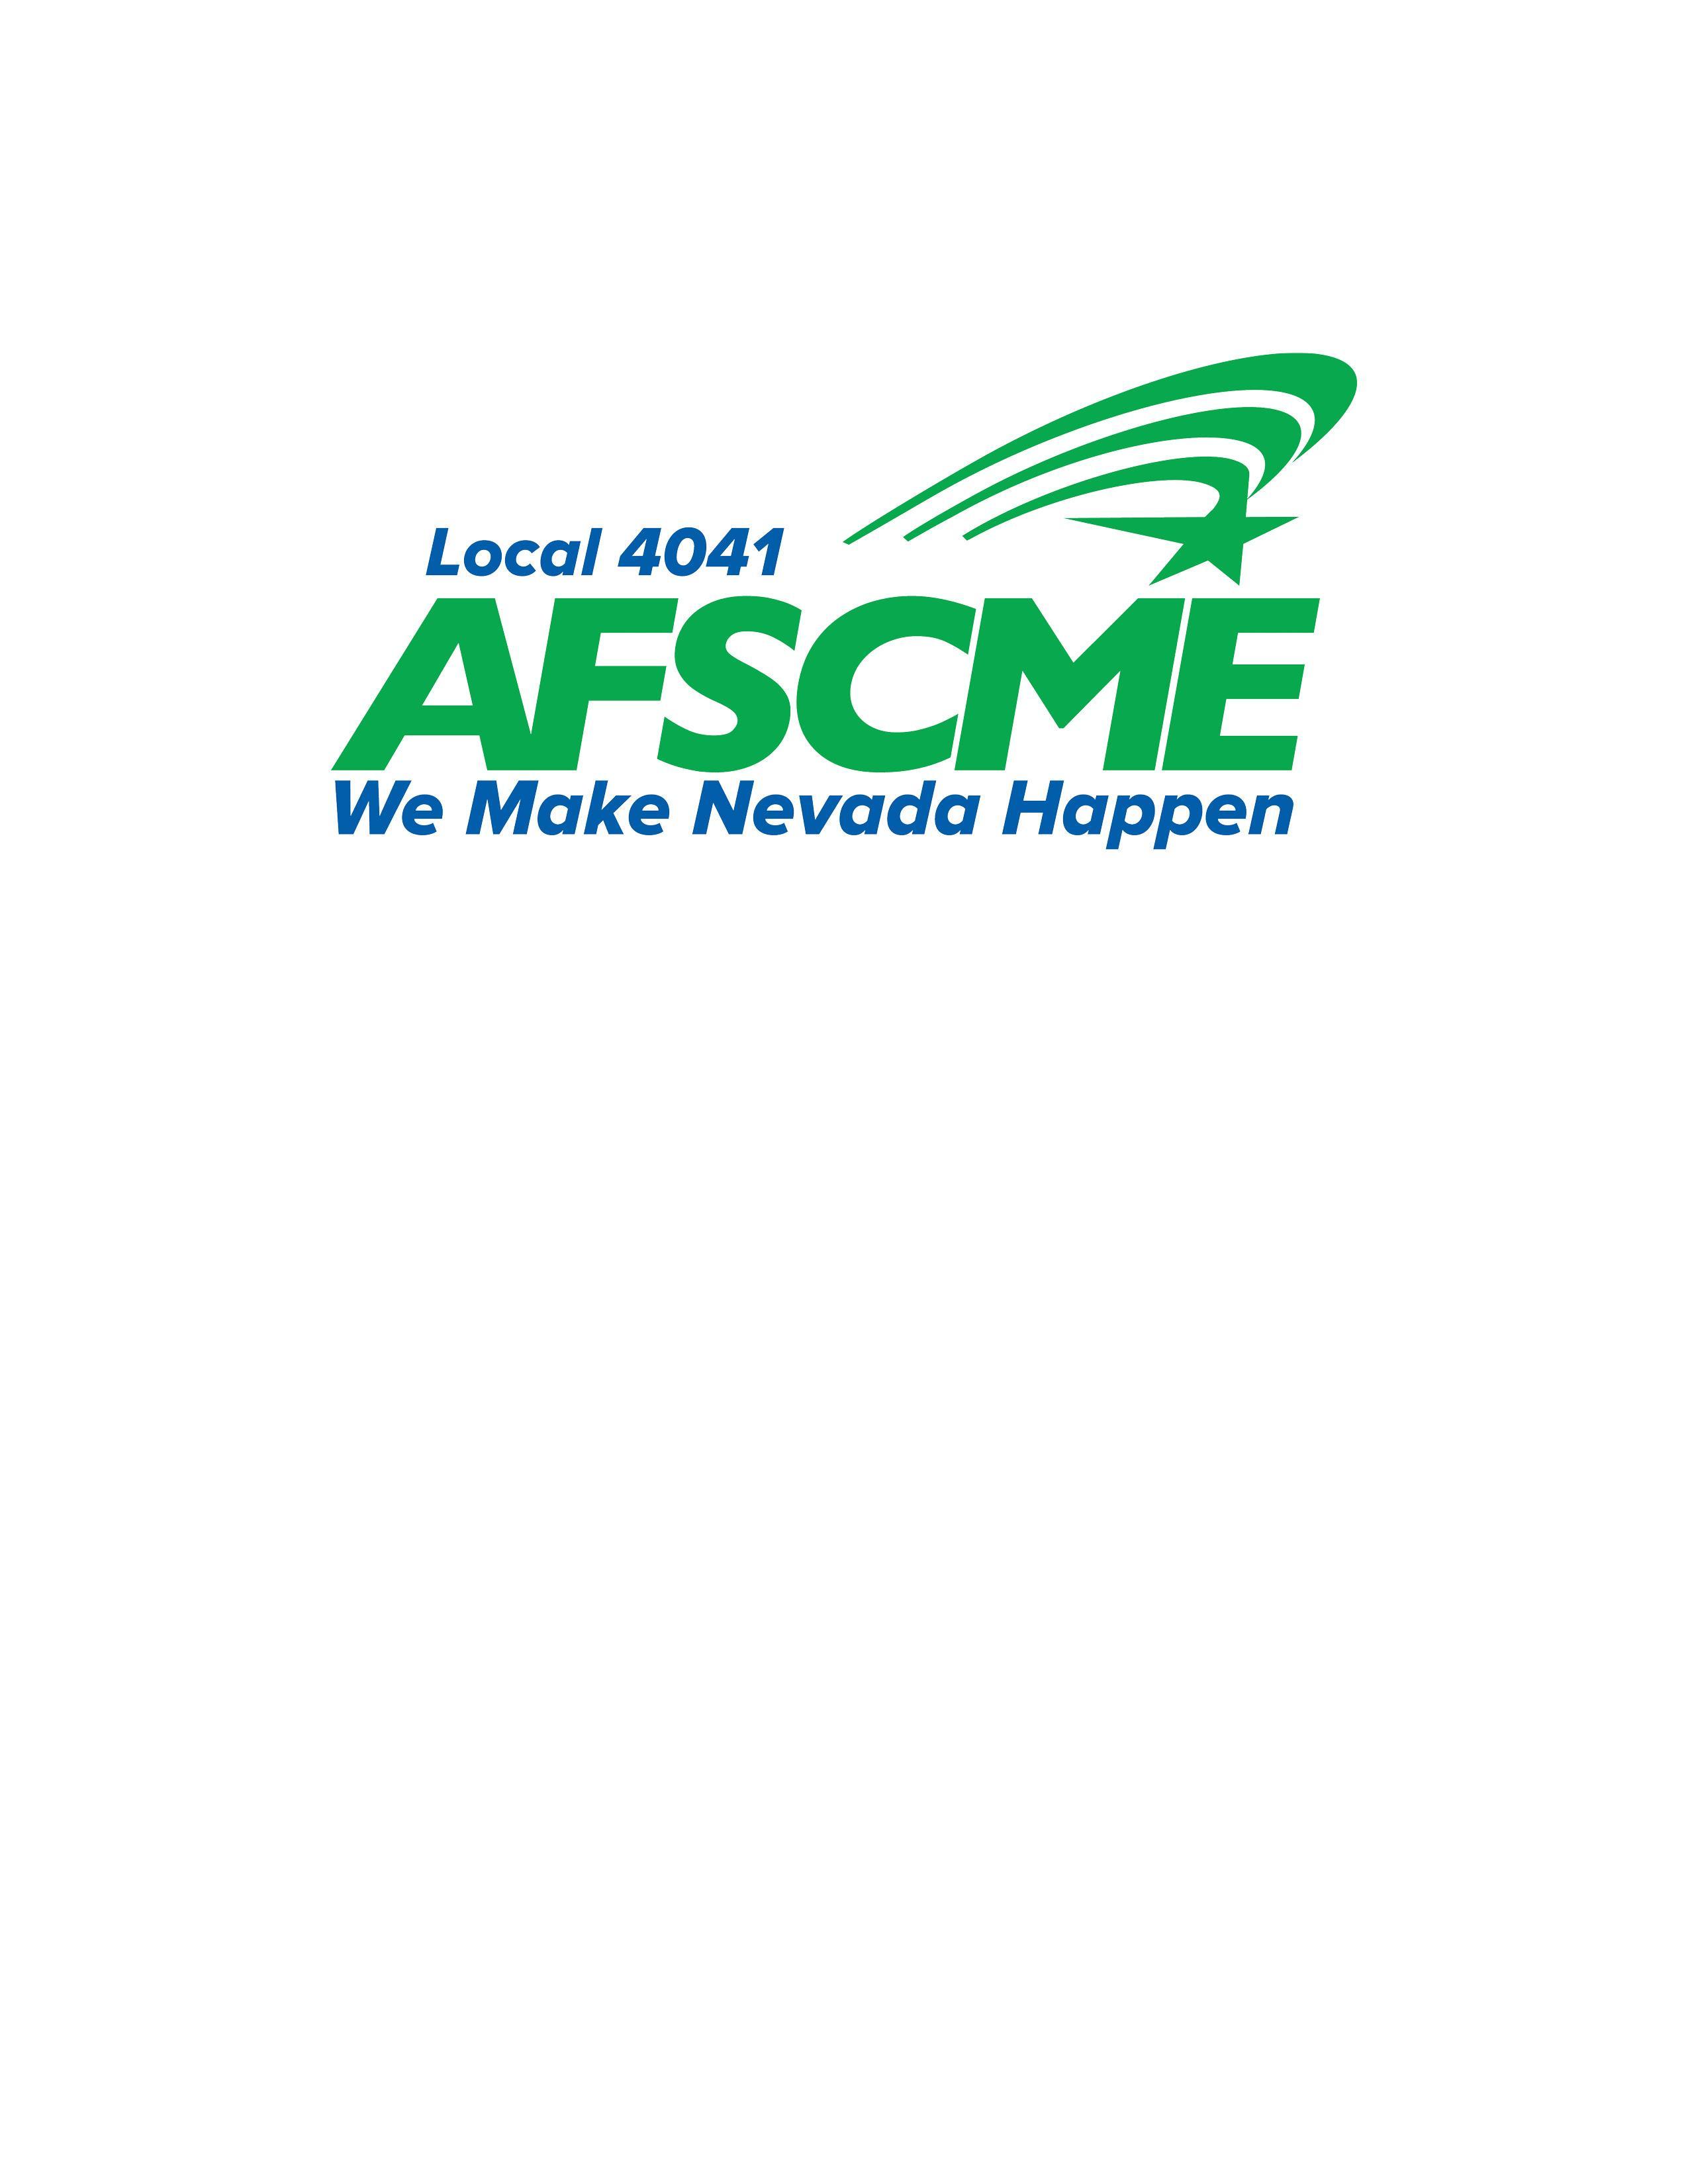 AFSCME Loca 4041 logo